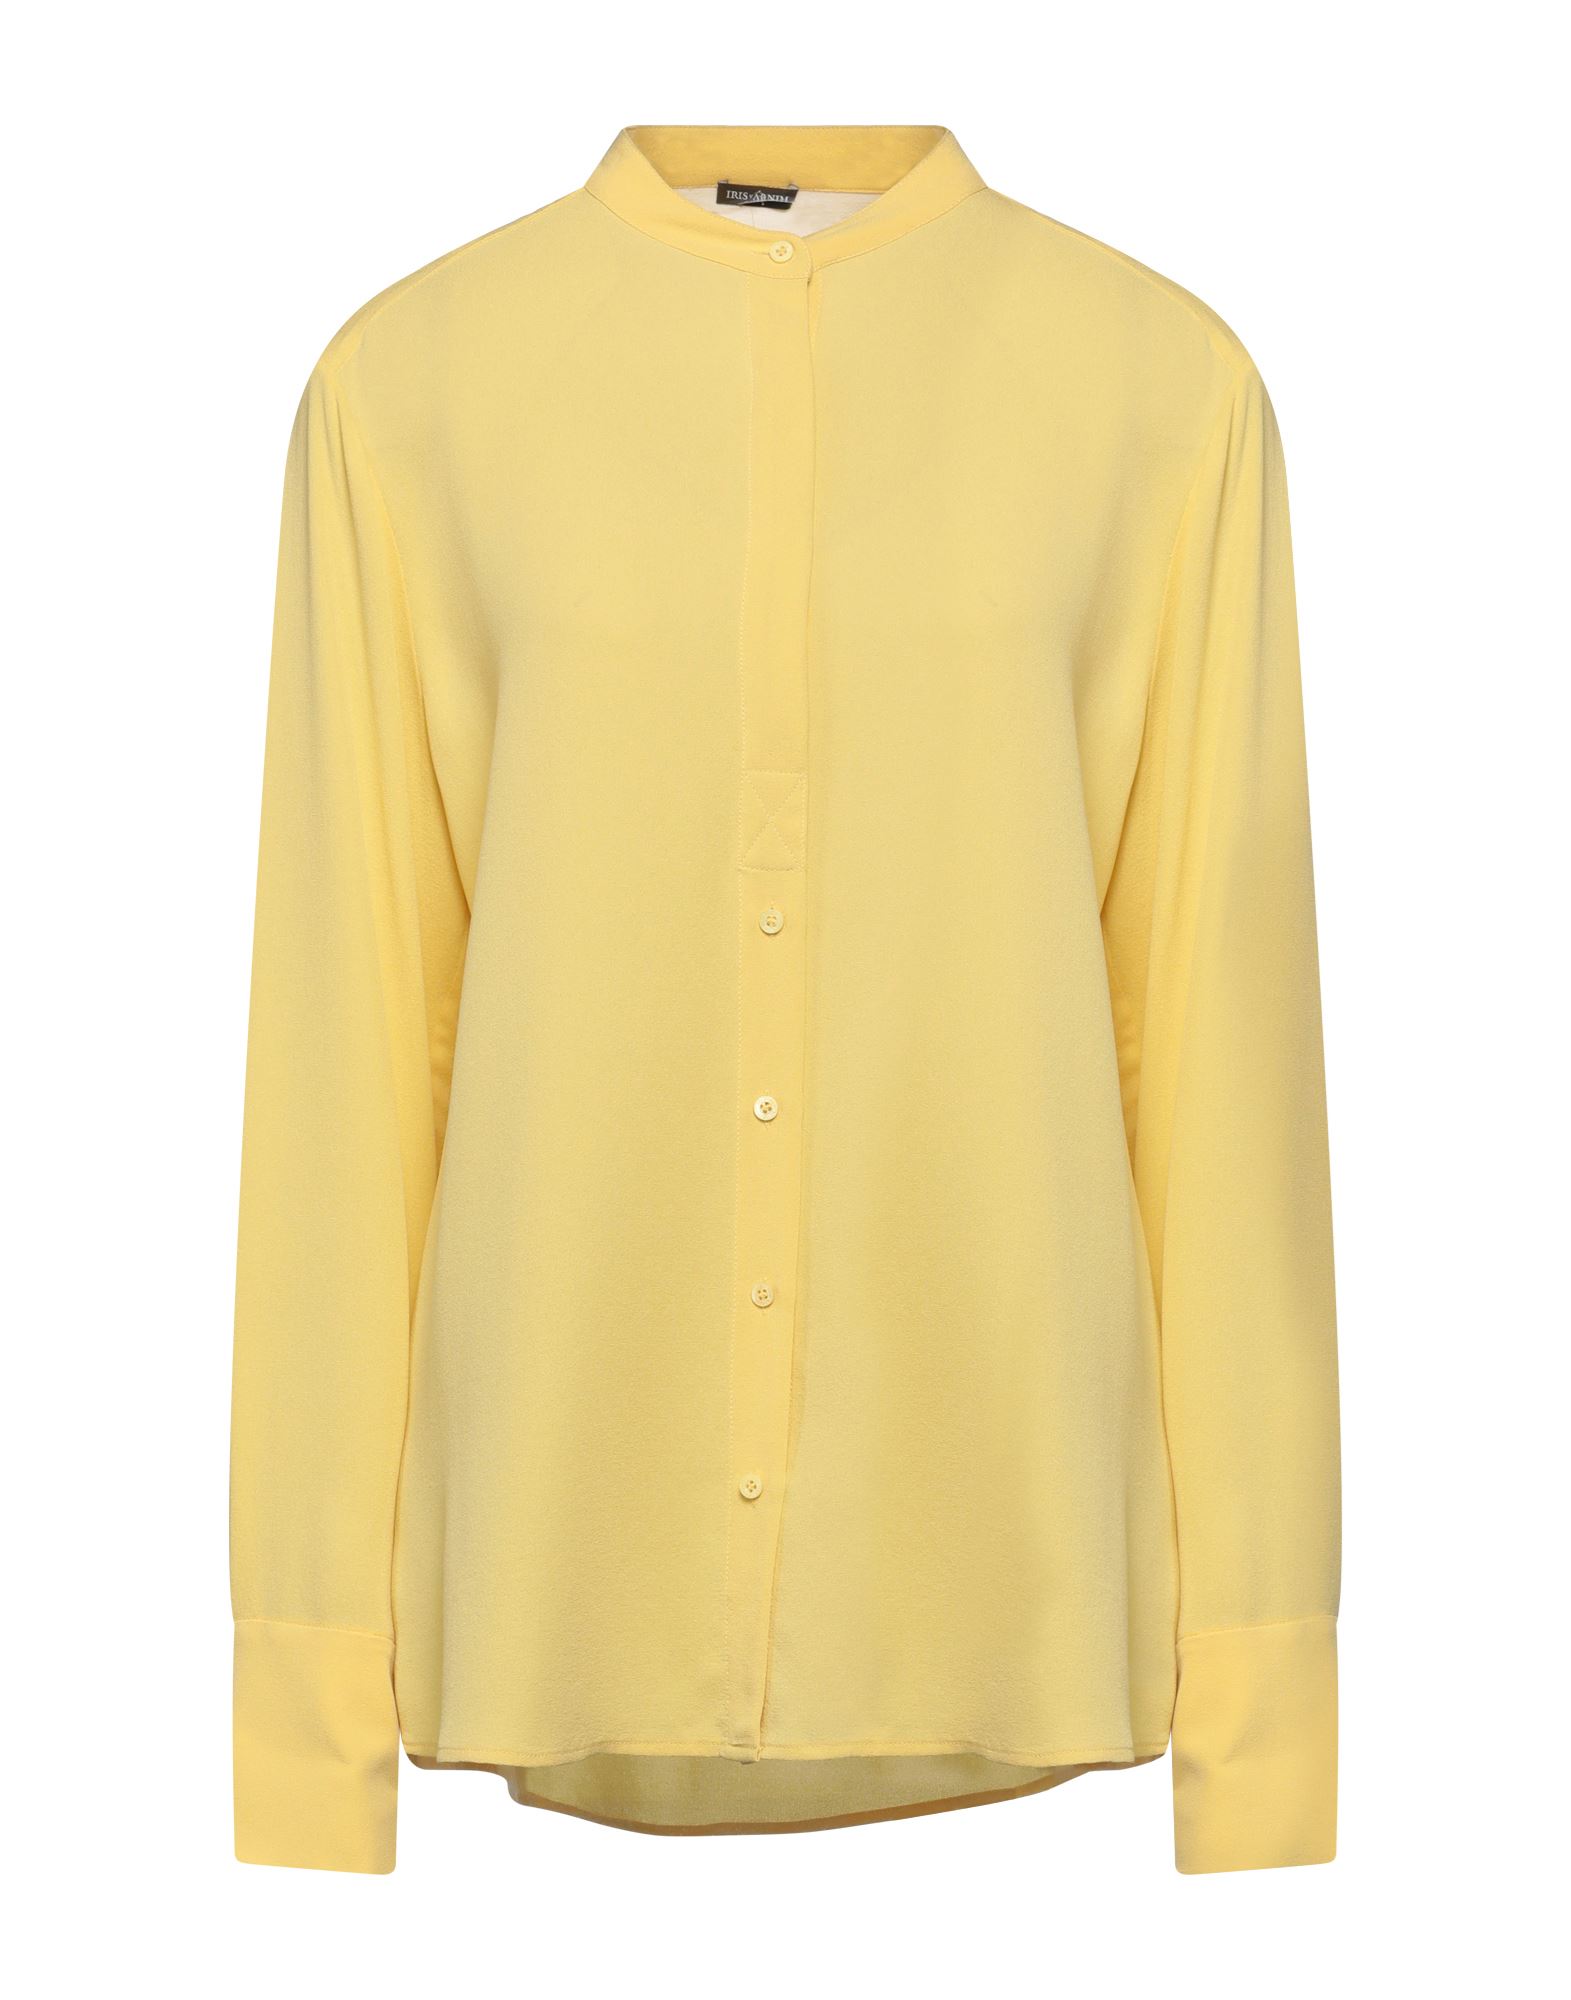 Iris Von Arnim Shirts In Yellow